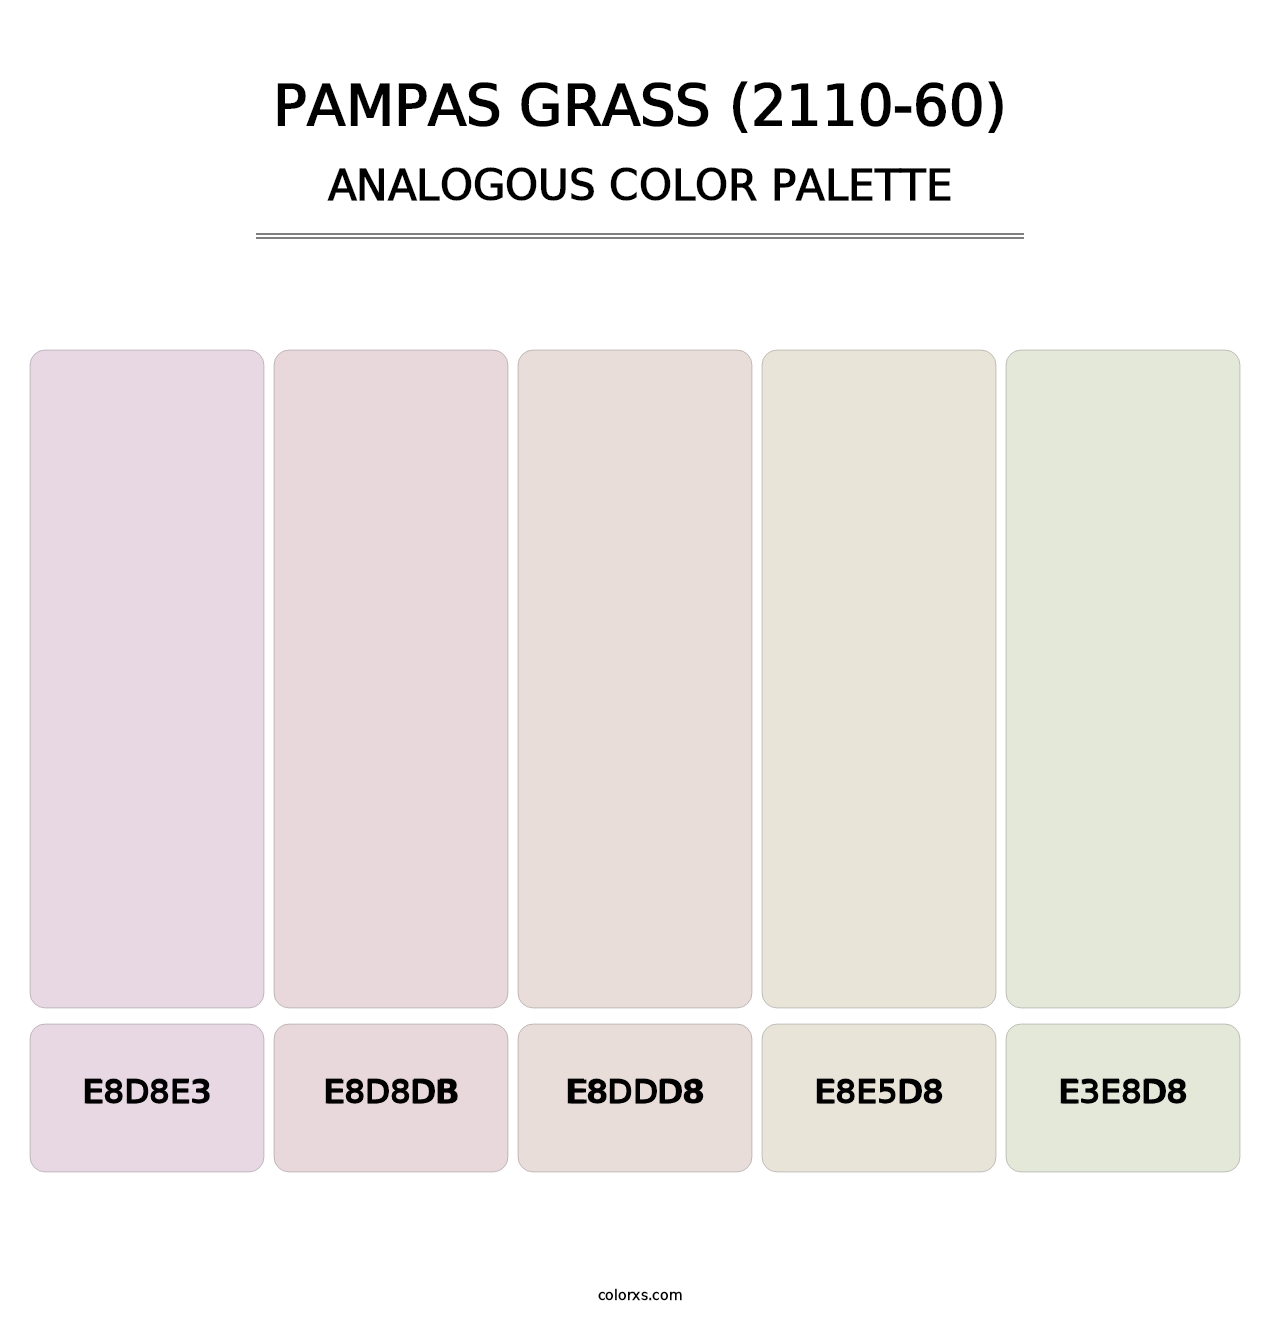 Pampas Grass (2110-60) - Analogous Color Palette